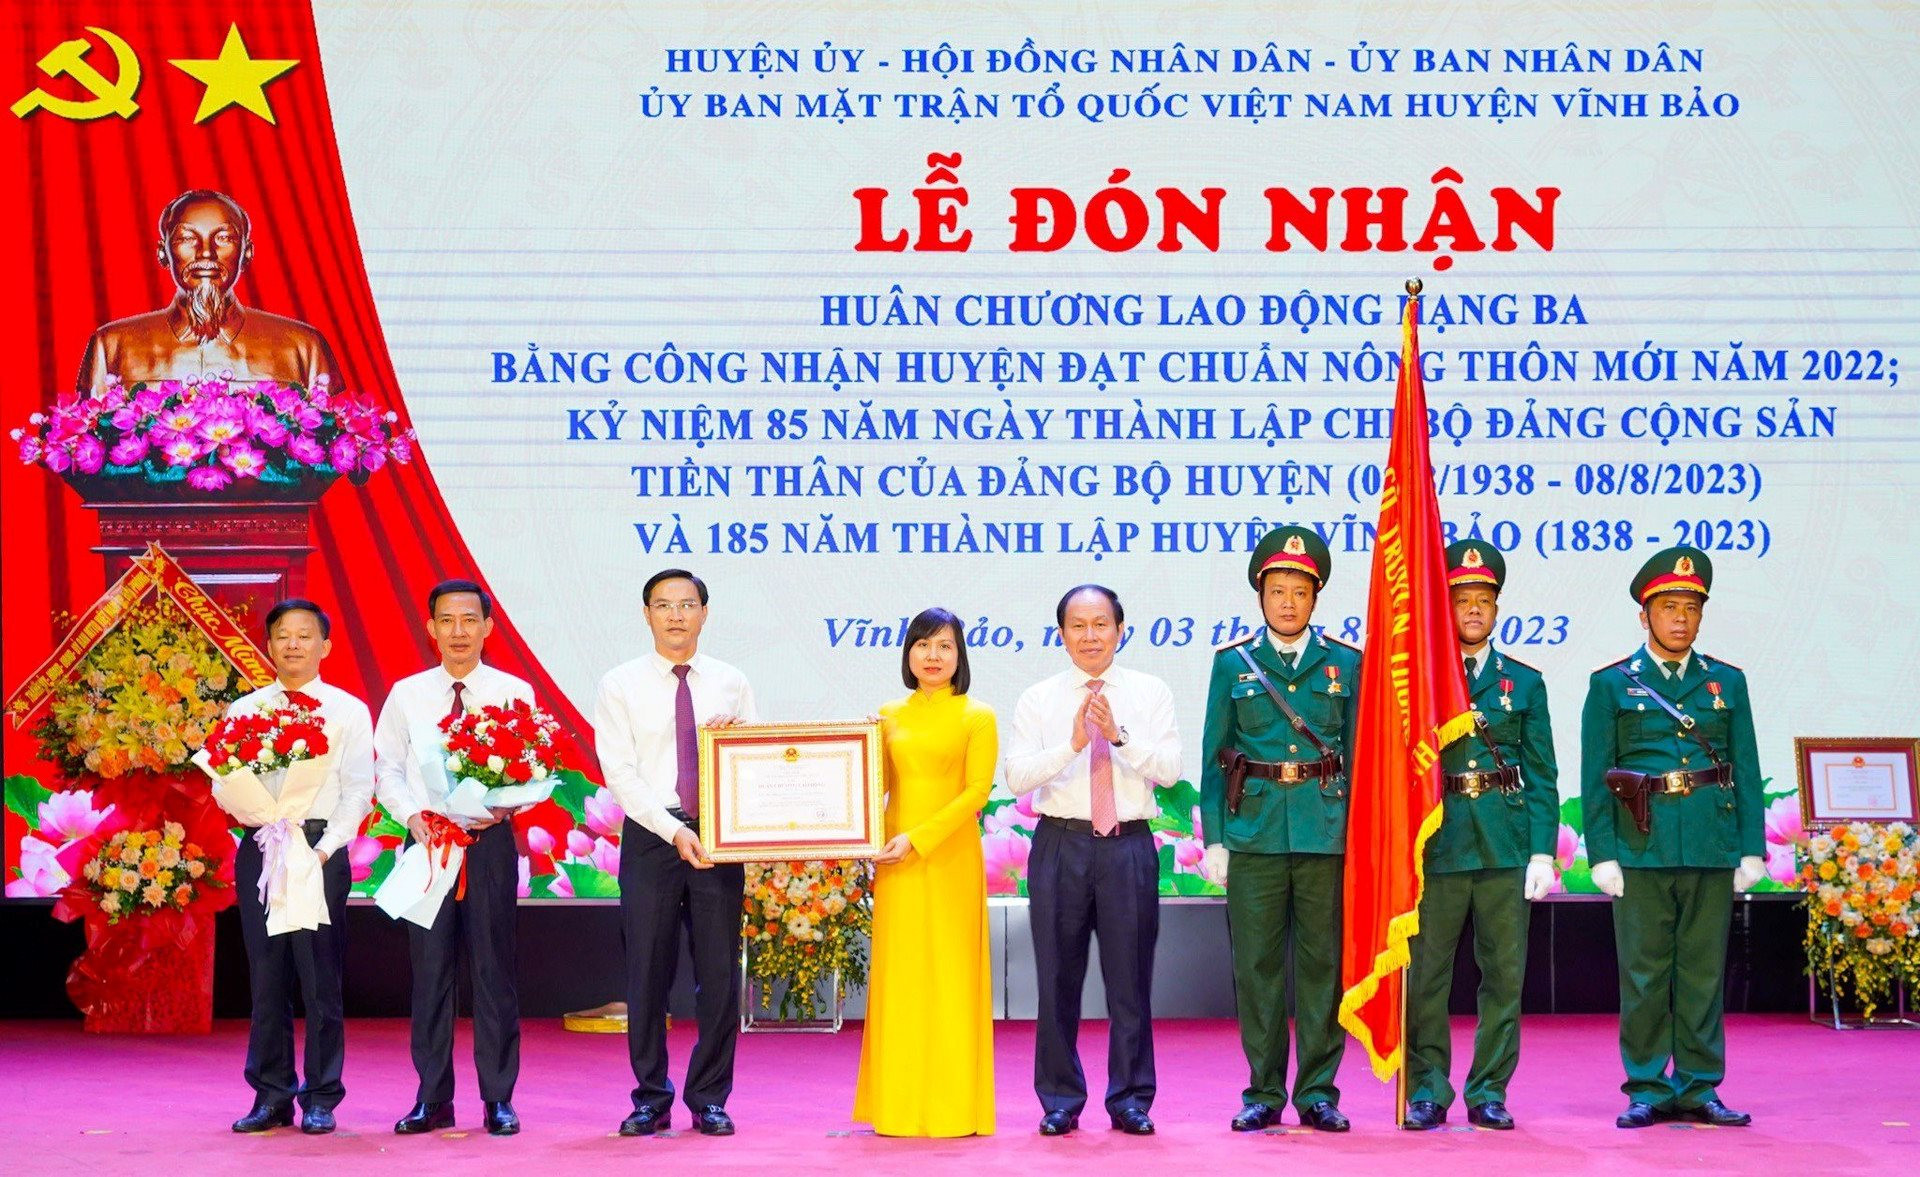 Ông Lê Tiến Châu - Bí thư Thành ủy Hải Phòng trao Huân chương Lao động hạng Ba của Chủ tịch nước tặng Đảng bộ, chính quyền và Nhân dân huyện Vĩnh Bảo.